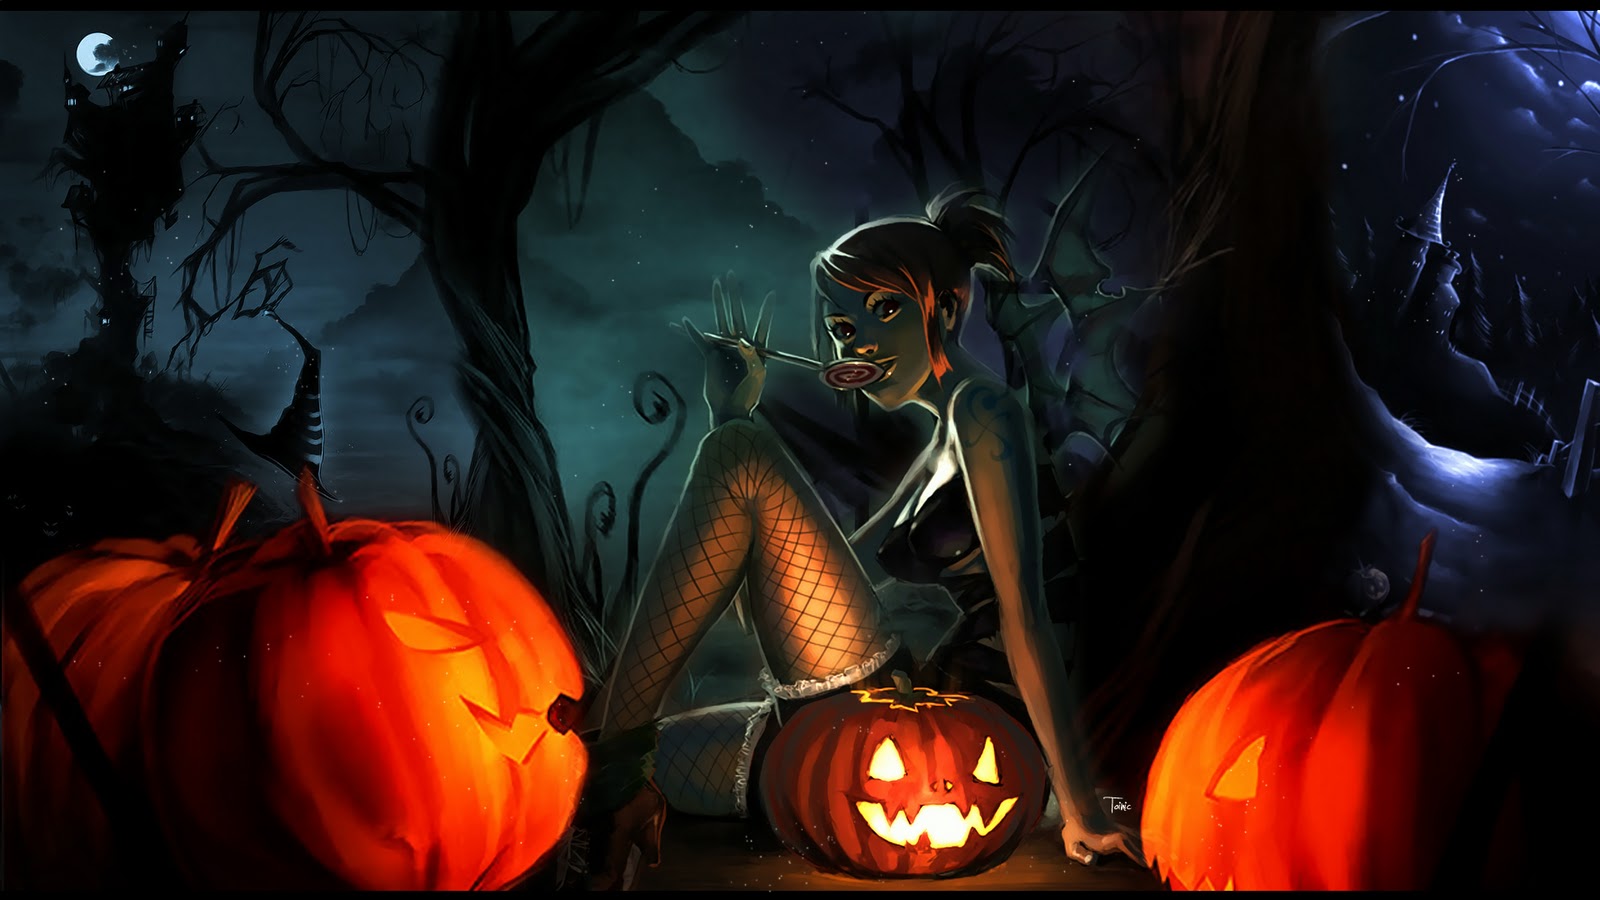 http://4.bp.blogspot.com/-YlsRxQT3lkw/UEIecxog_2I/AAAAAAAAASQ/HBjDjAc2XOk/s1600/halloween-black-night.jpg